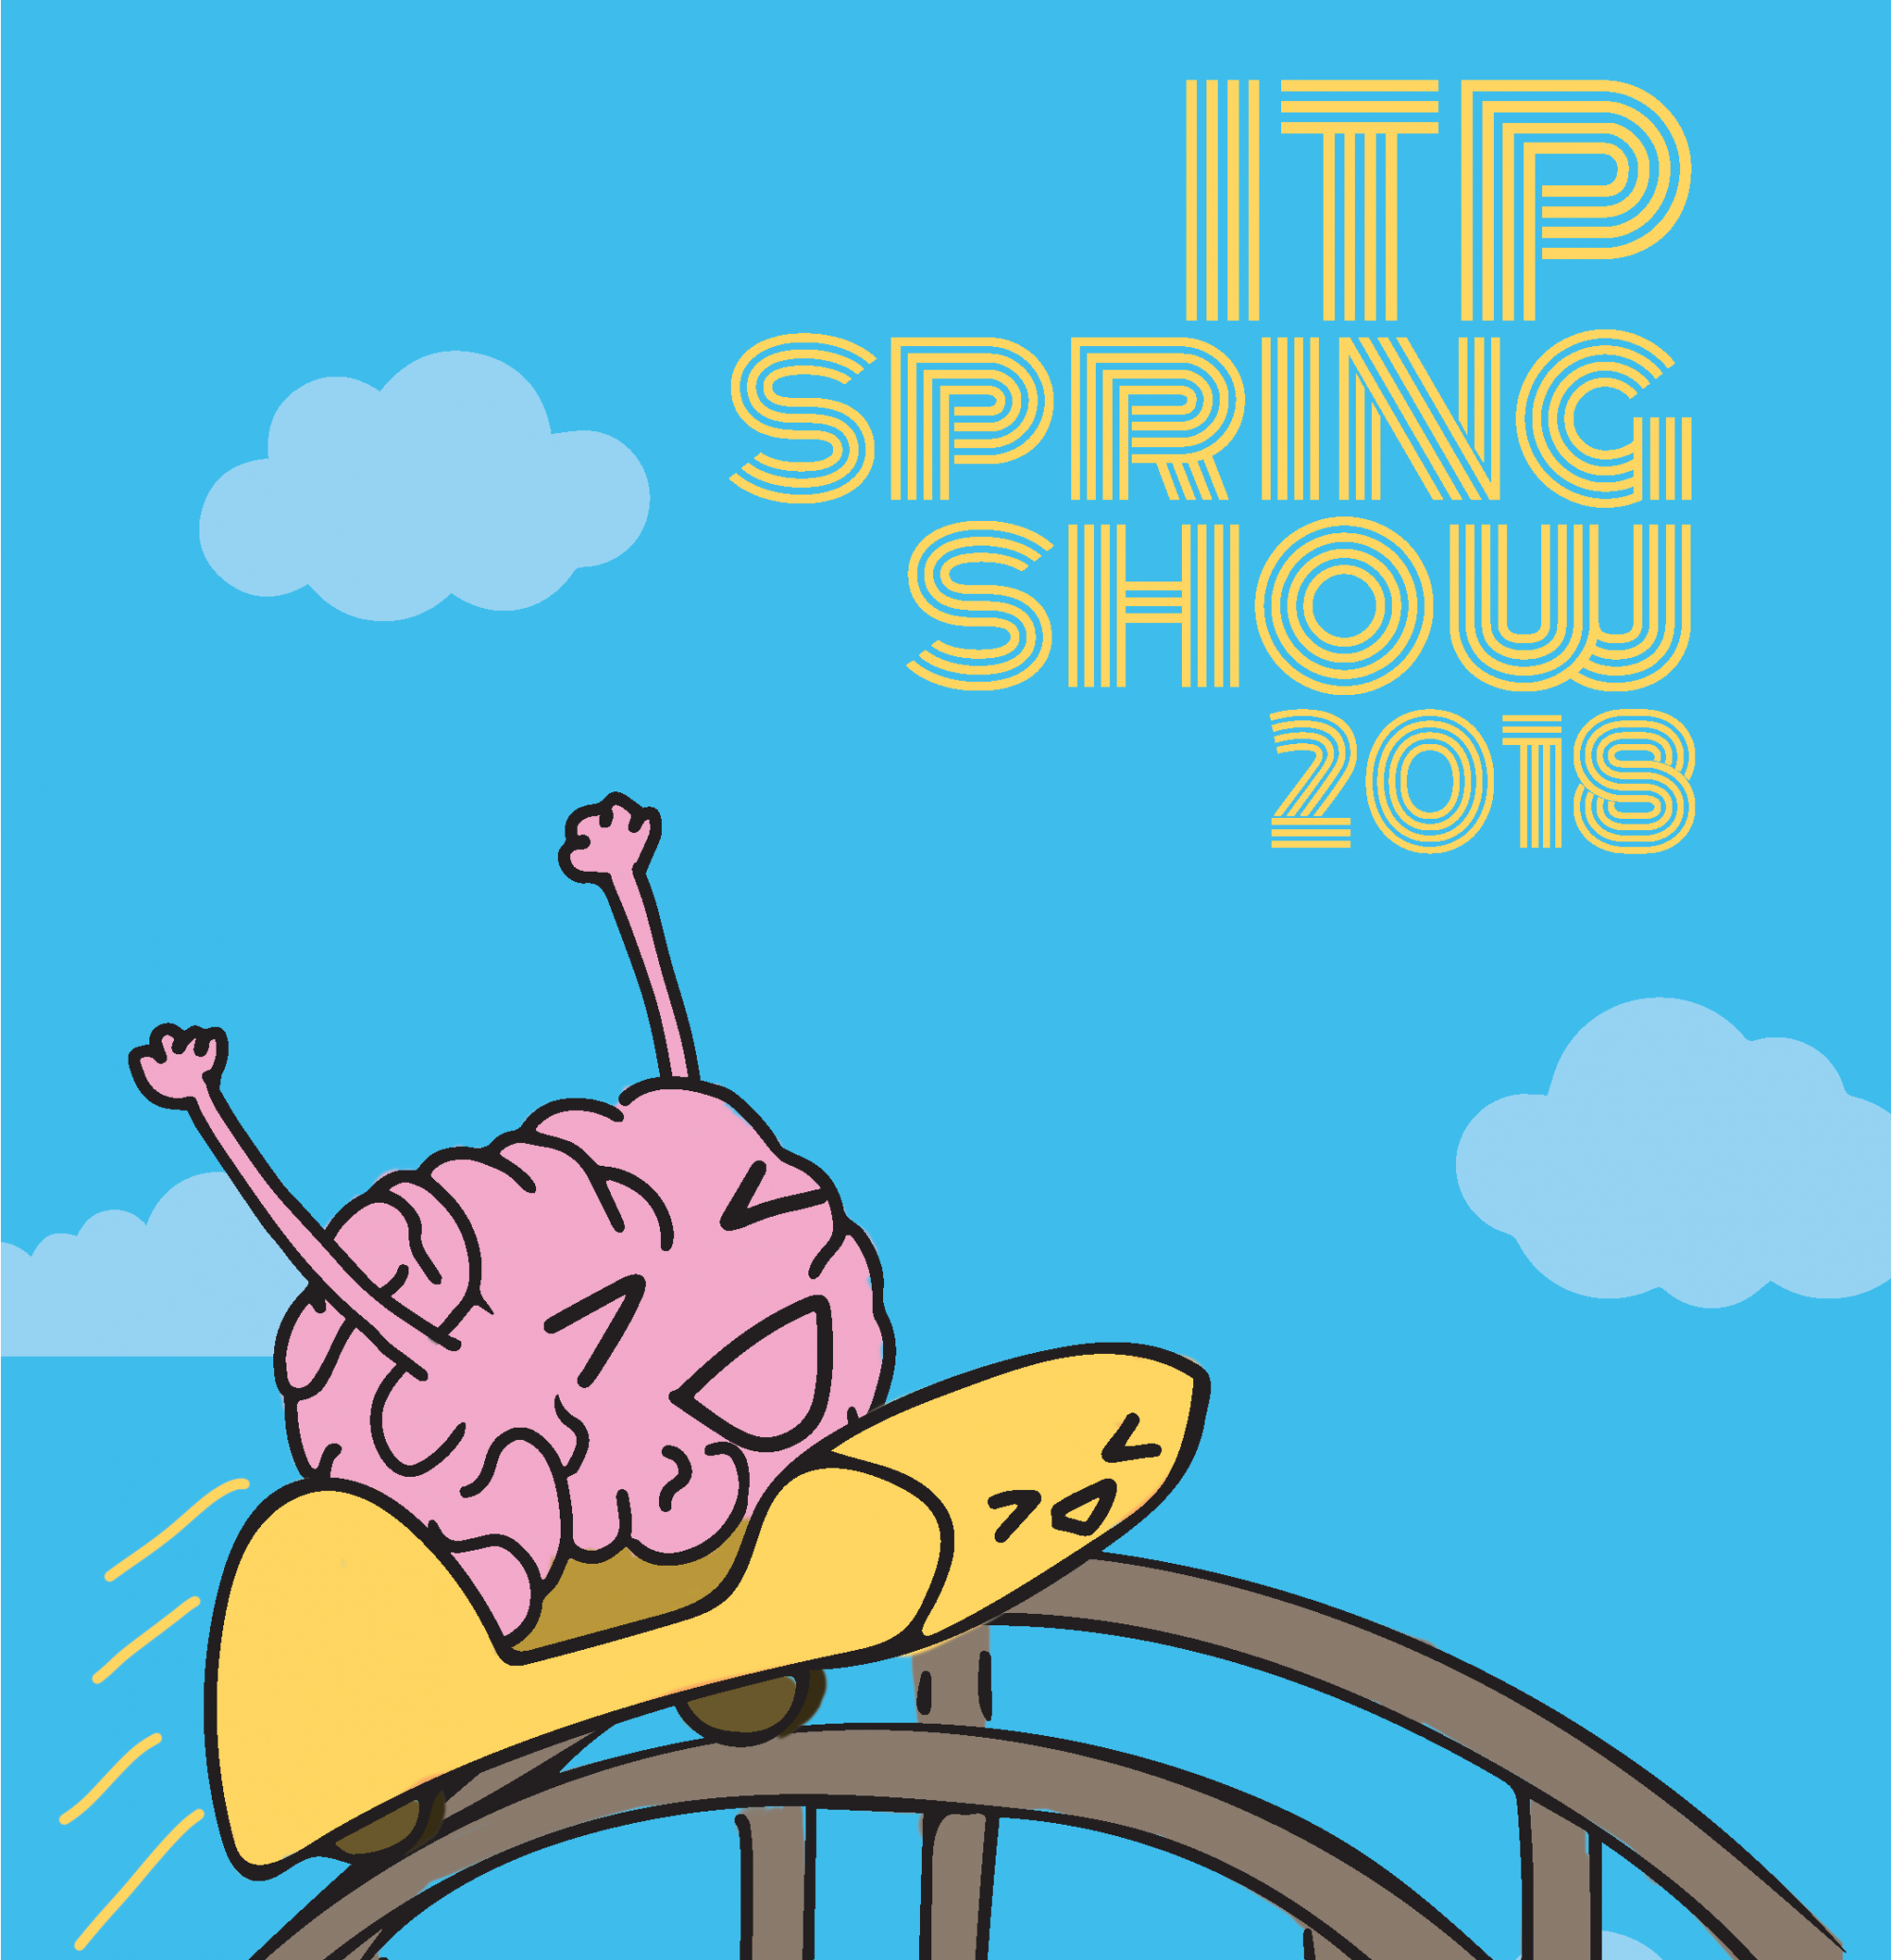 ITP Spring Show 2018